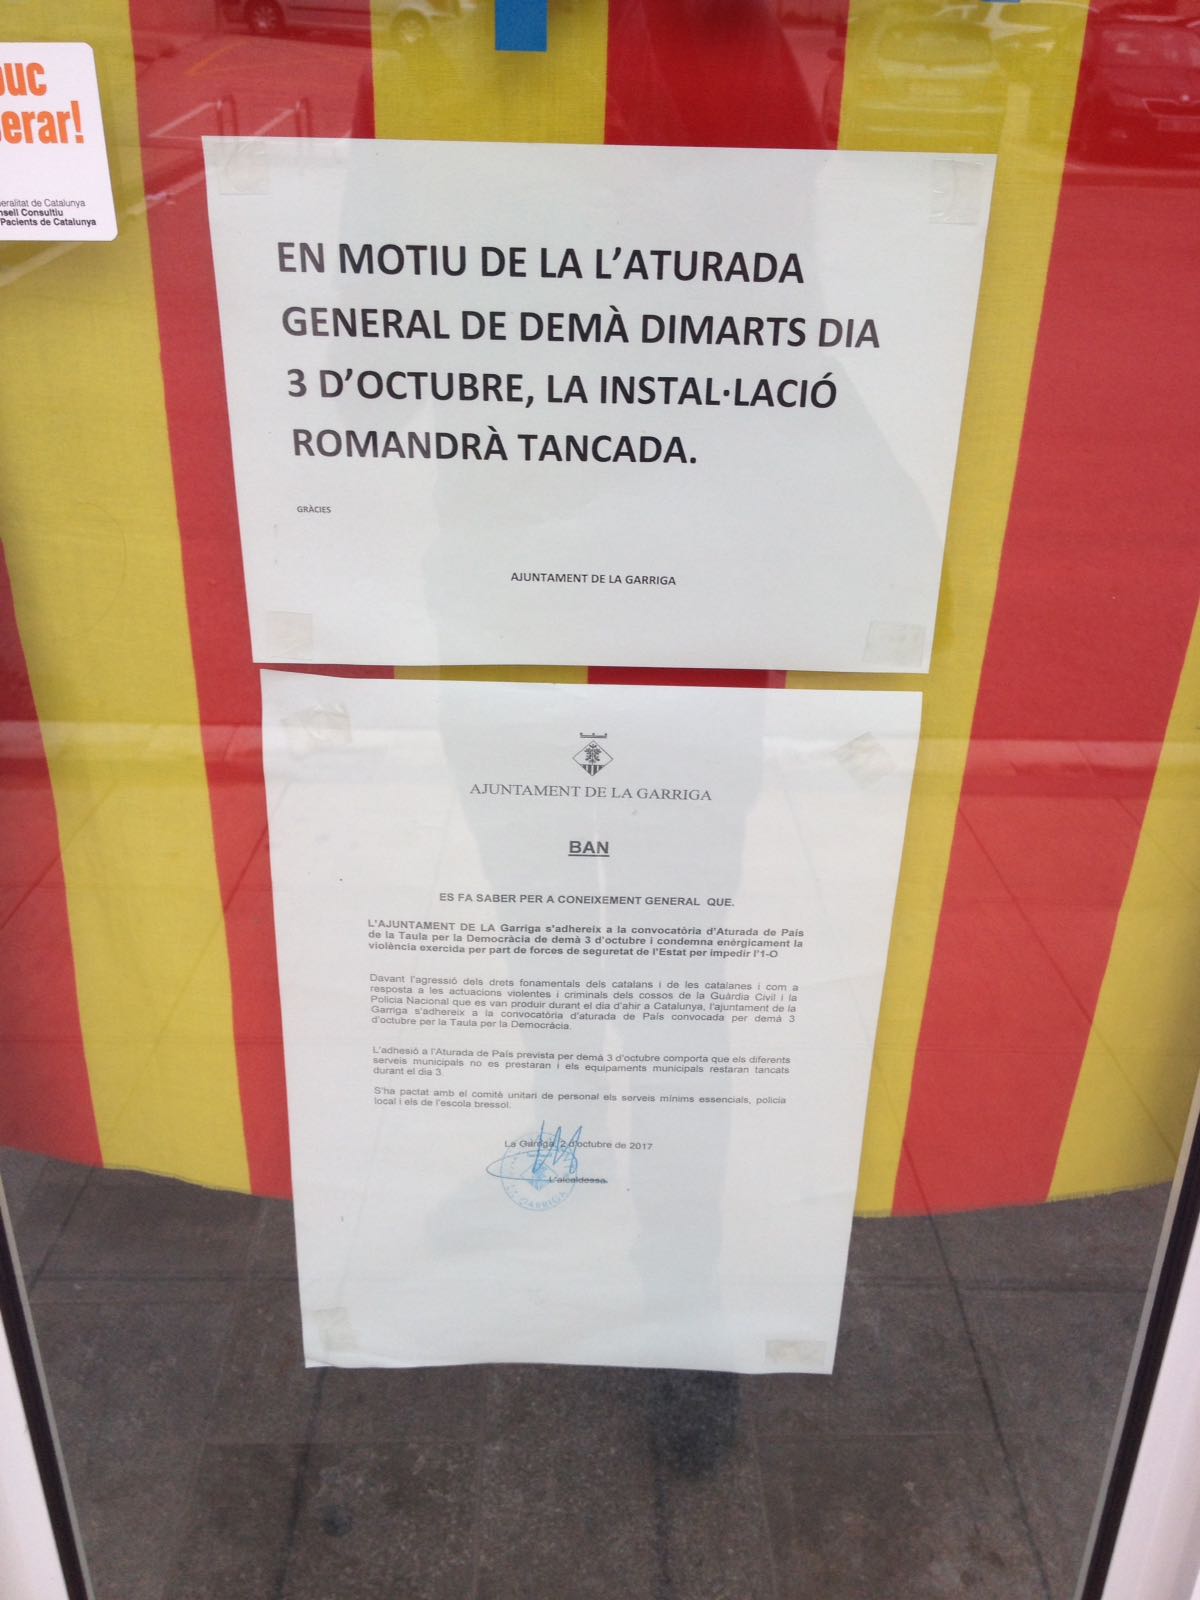 Uns cartells informen del tancament de la piscina municipal de la Garriga aquest dimarts